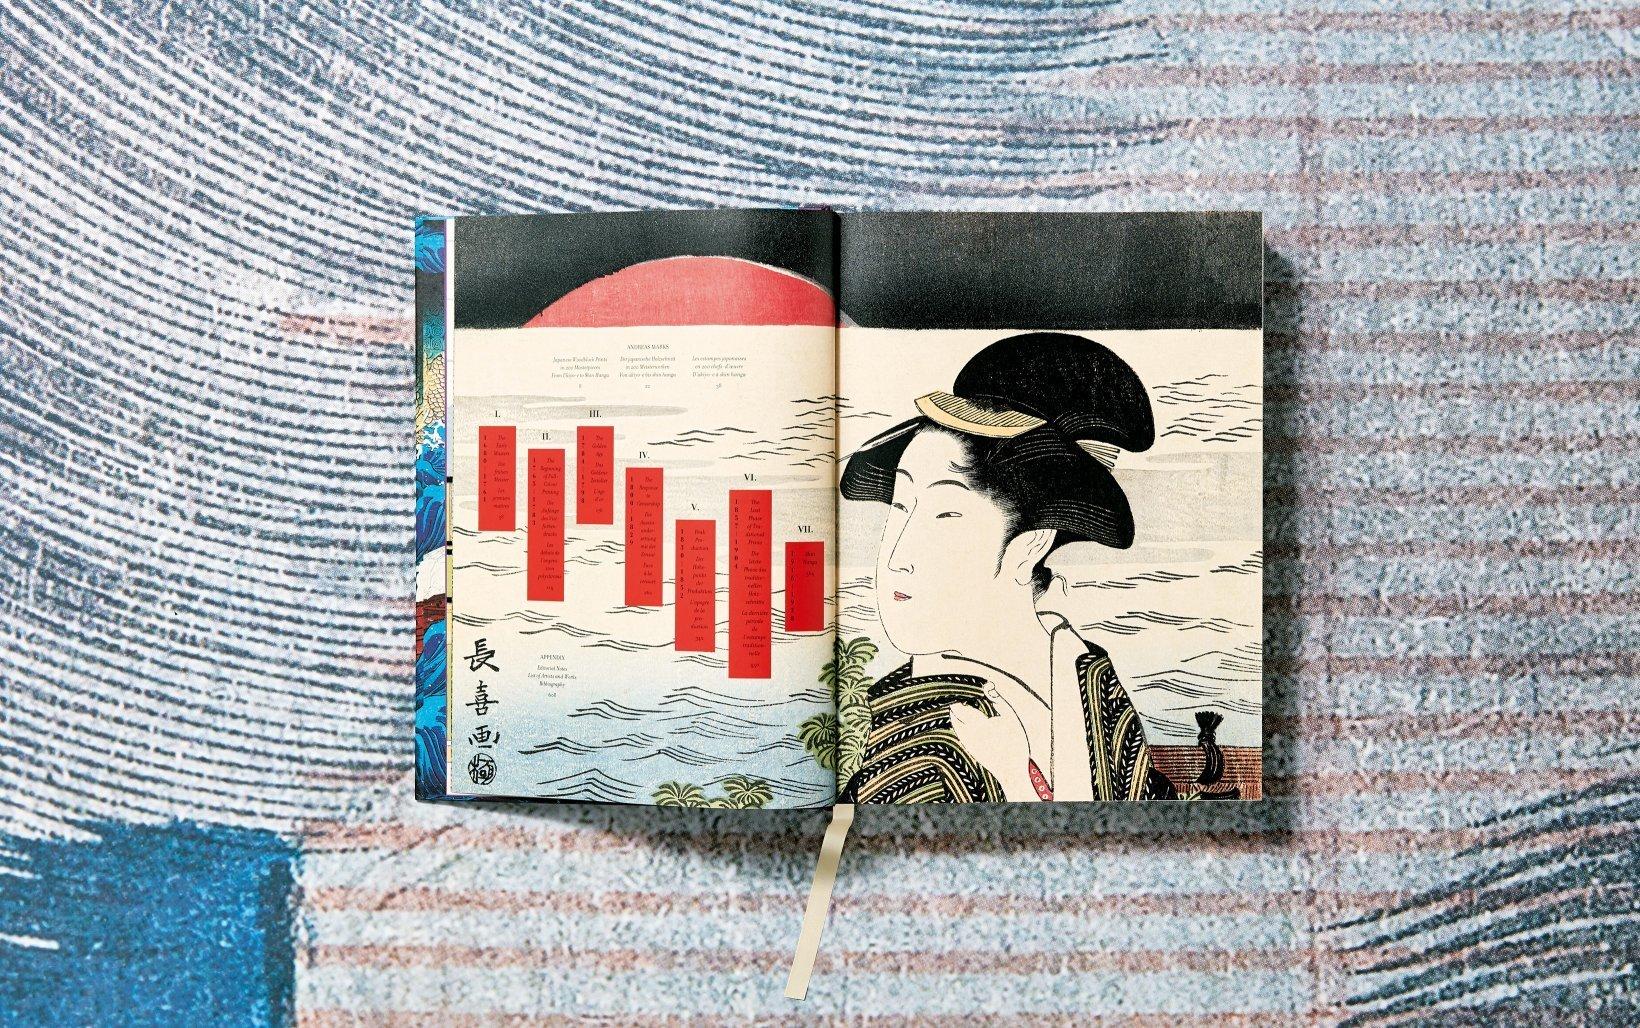 Holzschnitt-Wunder
Eine visuelle Geschichte von 200 japanischen Meisterwerken
Von Edouard Manets Porträt des naturalistischen Schriftstellers Émile Zola, der inmitten seiner japanischen Kunstfunde sitzt, bis hin zu Van Goghs akribischen Kopien der